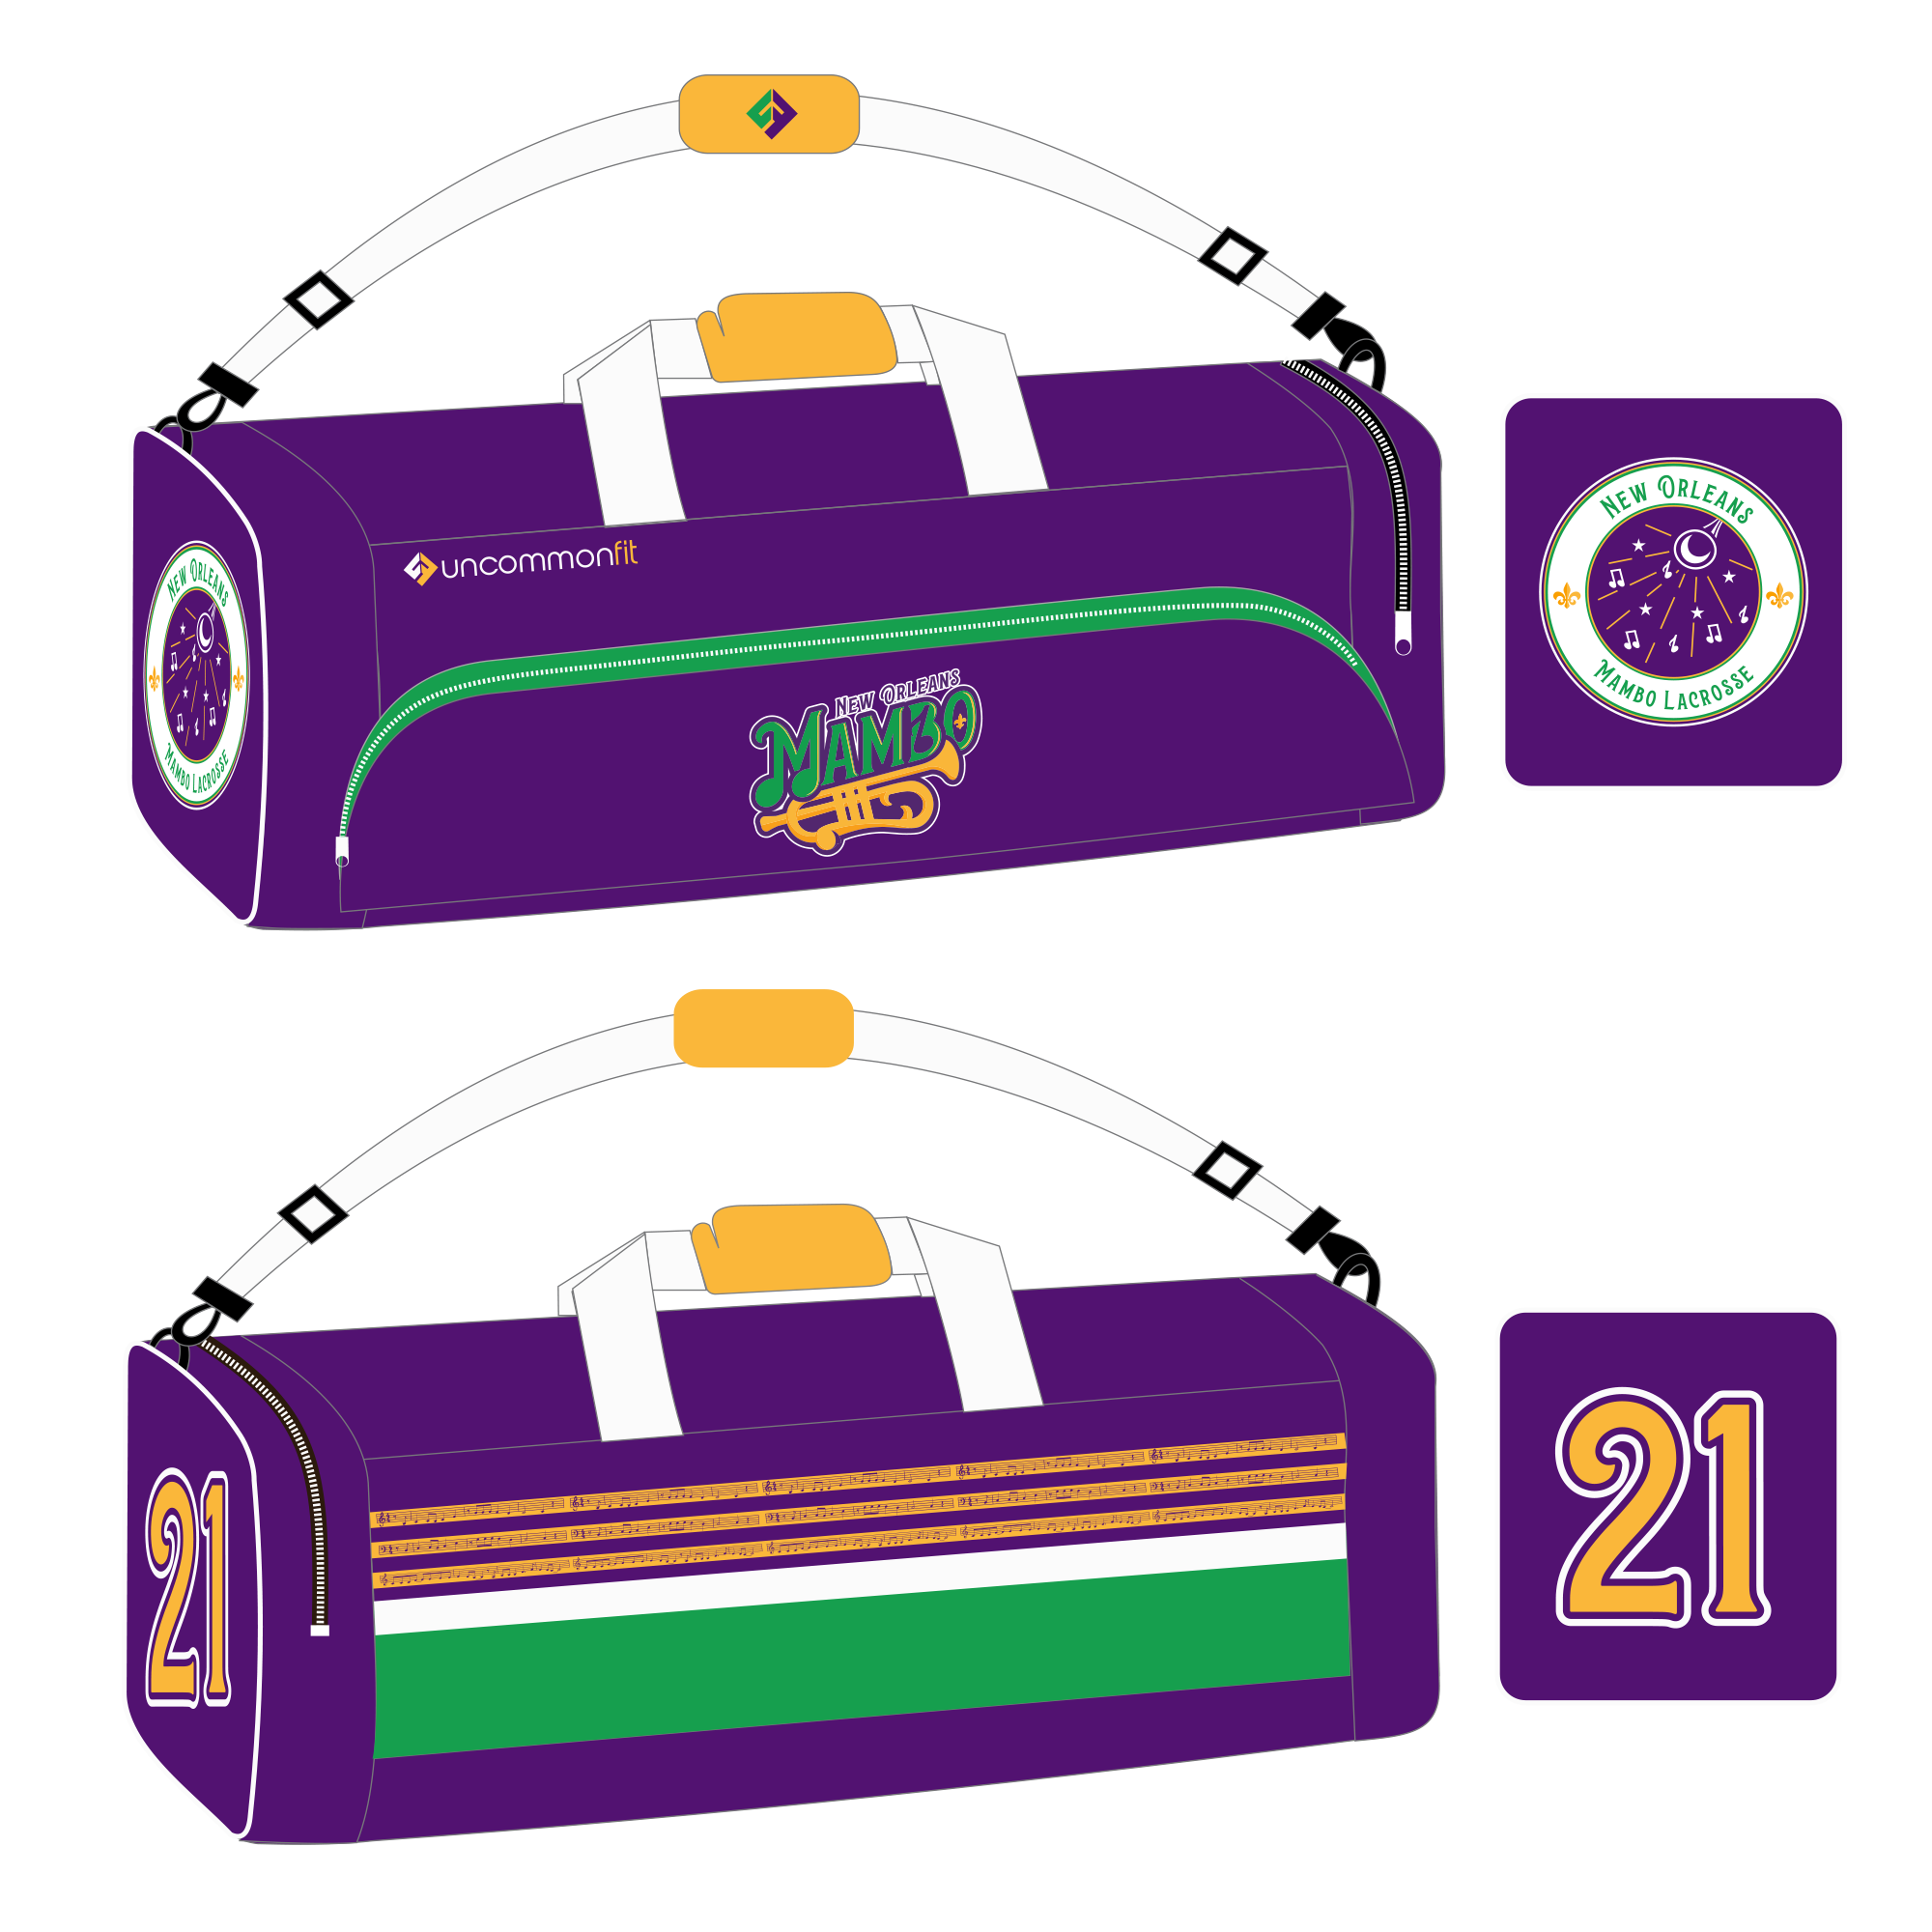 Mambo 'Traveler' Equipment Bag (holds 2 Sticks)